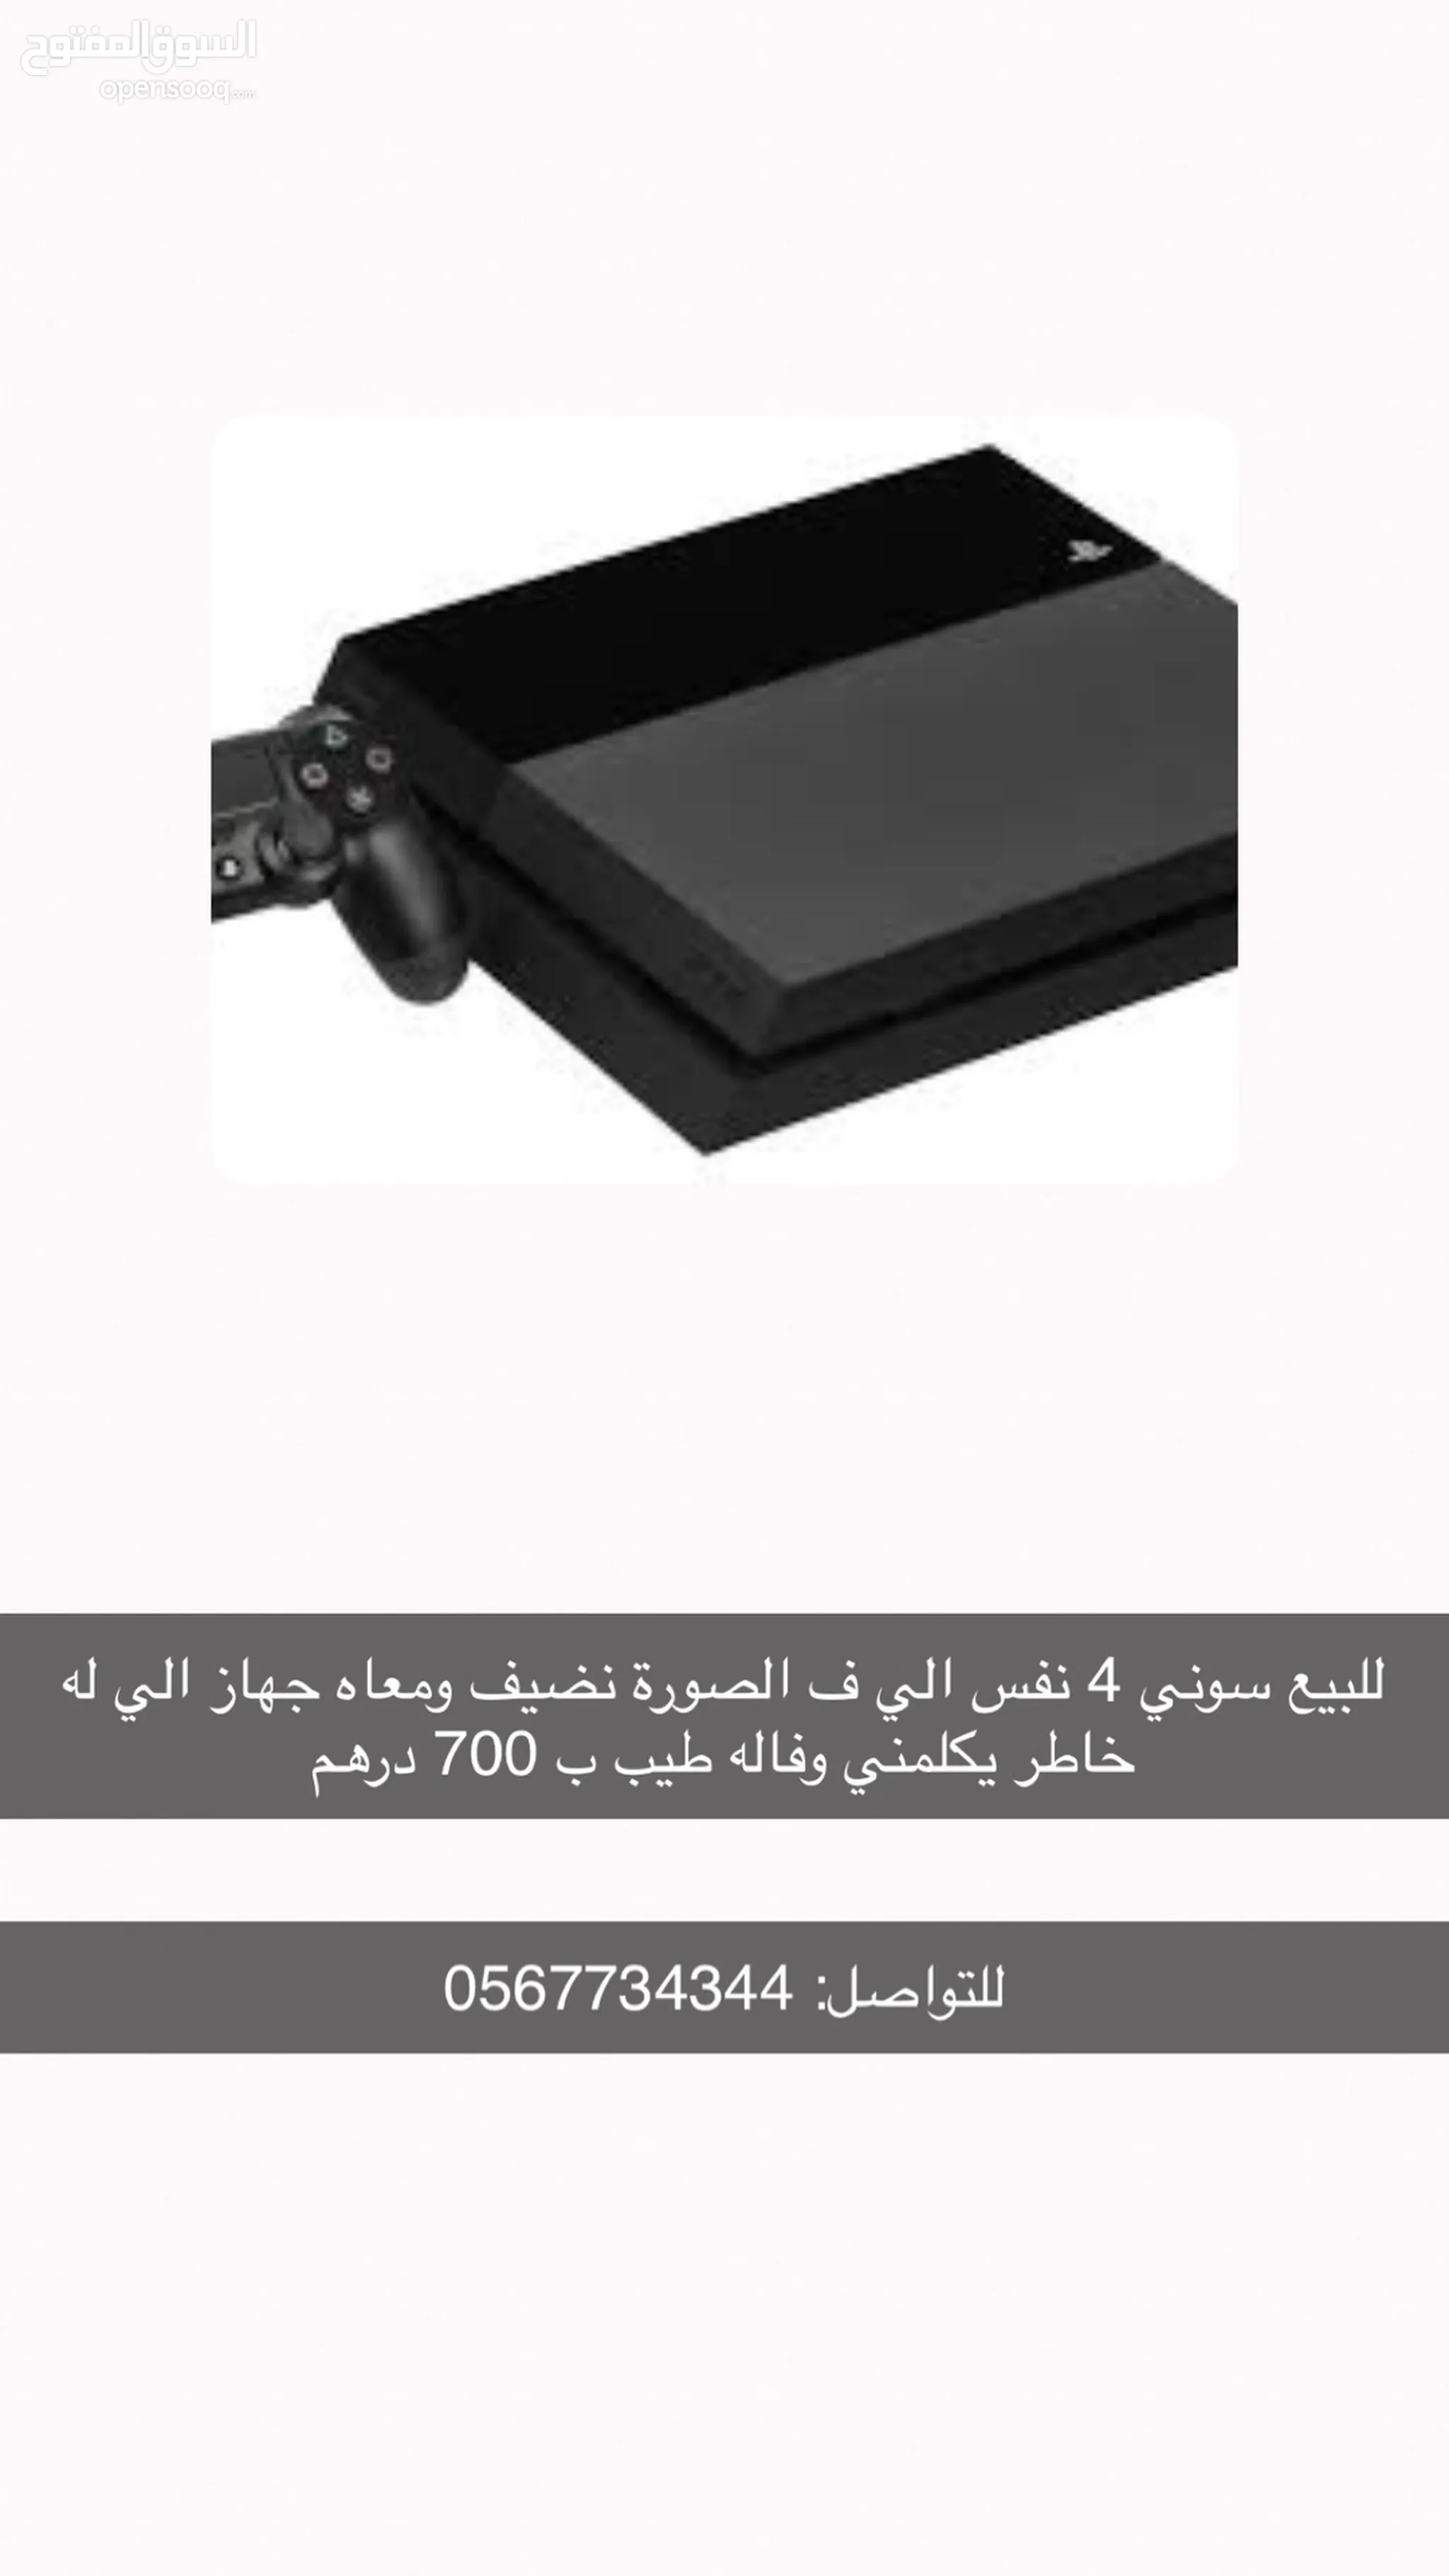 اجهزة بلايستيشن 4 للبيع : أرخص الأسعار : أجهزة : العاب فيديو : أبو ظبي |  السوق المفتوح